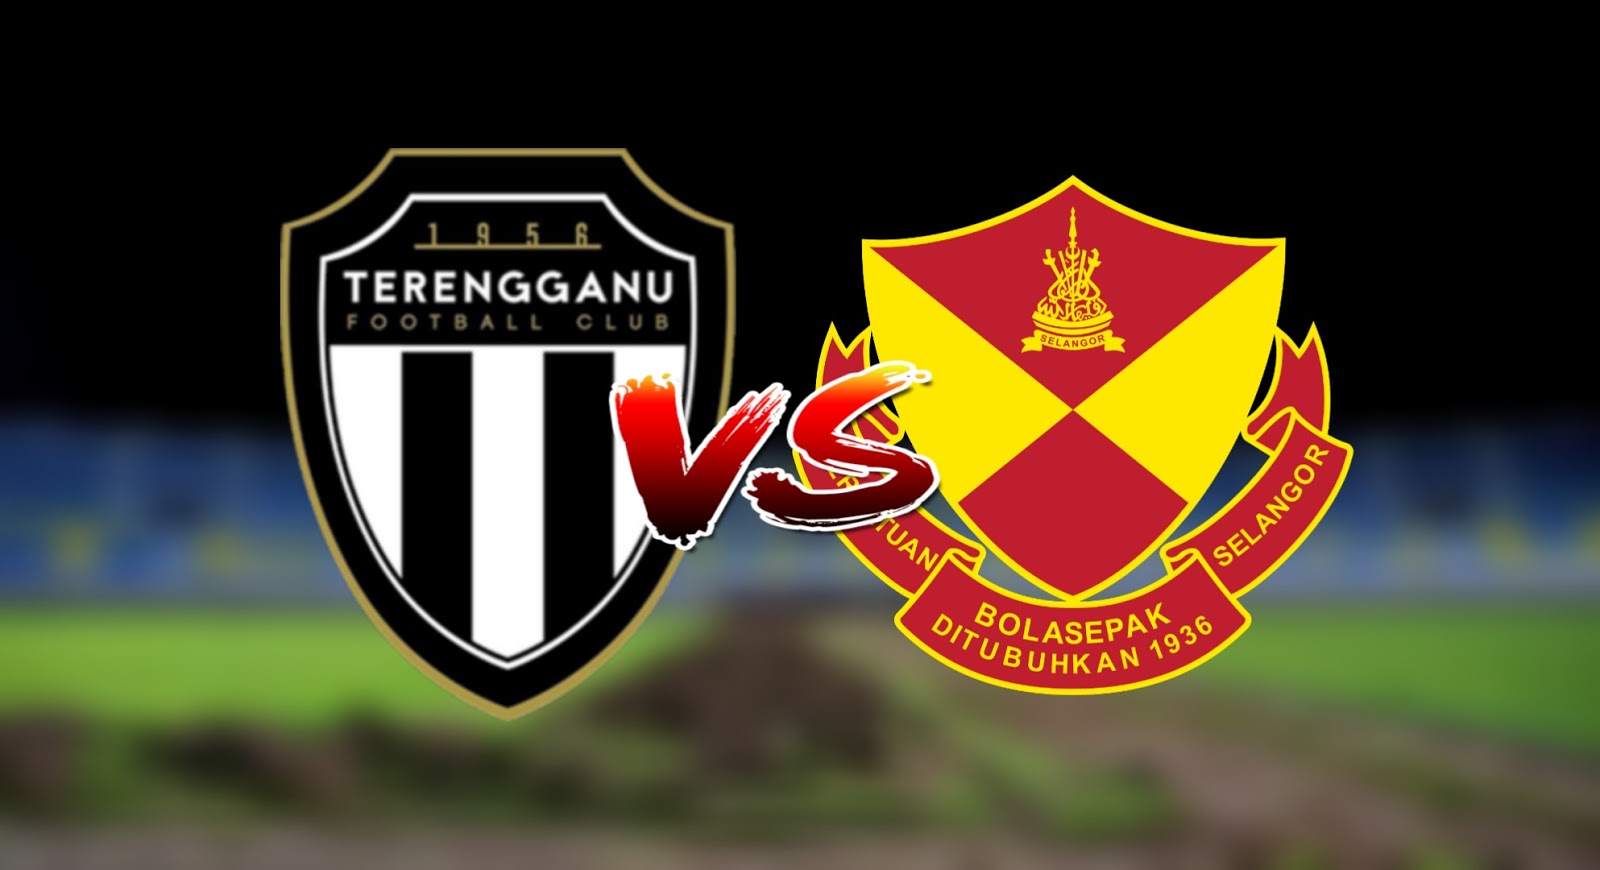 Terengganu vs uitm